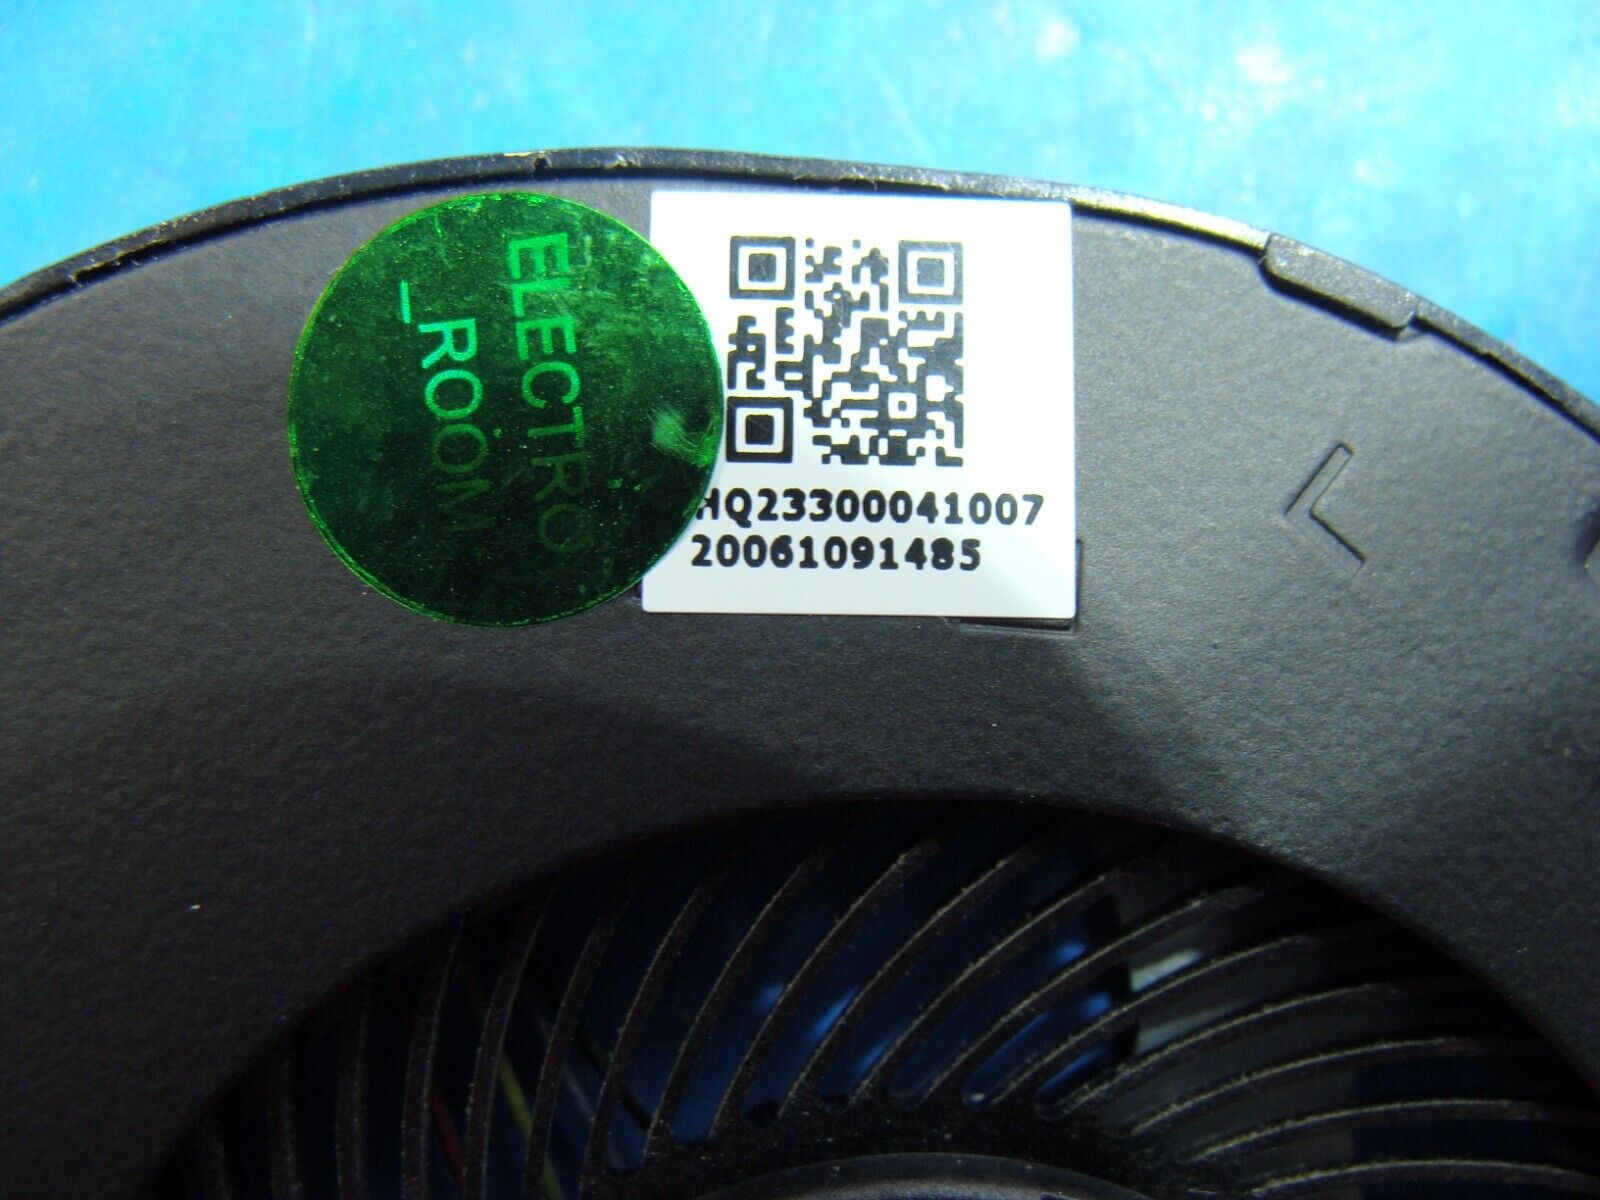 Acer Swift 3 13.5 N19H3 SF313-52-526M CPU Cooling Fan w/Heatsink HQ23300041007